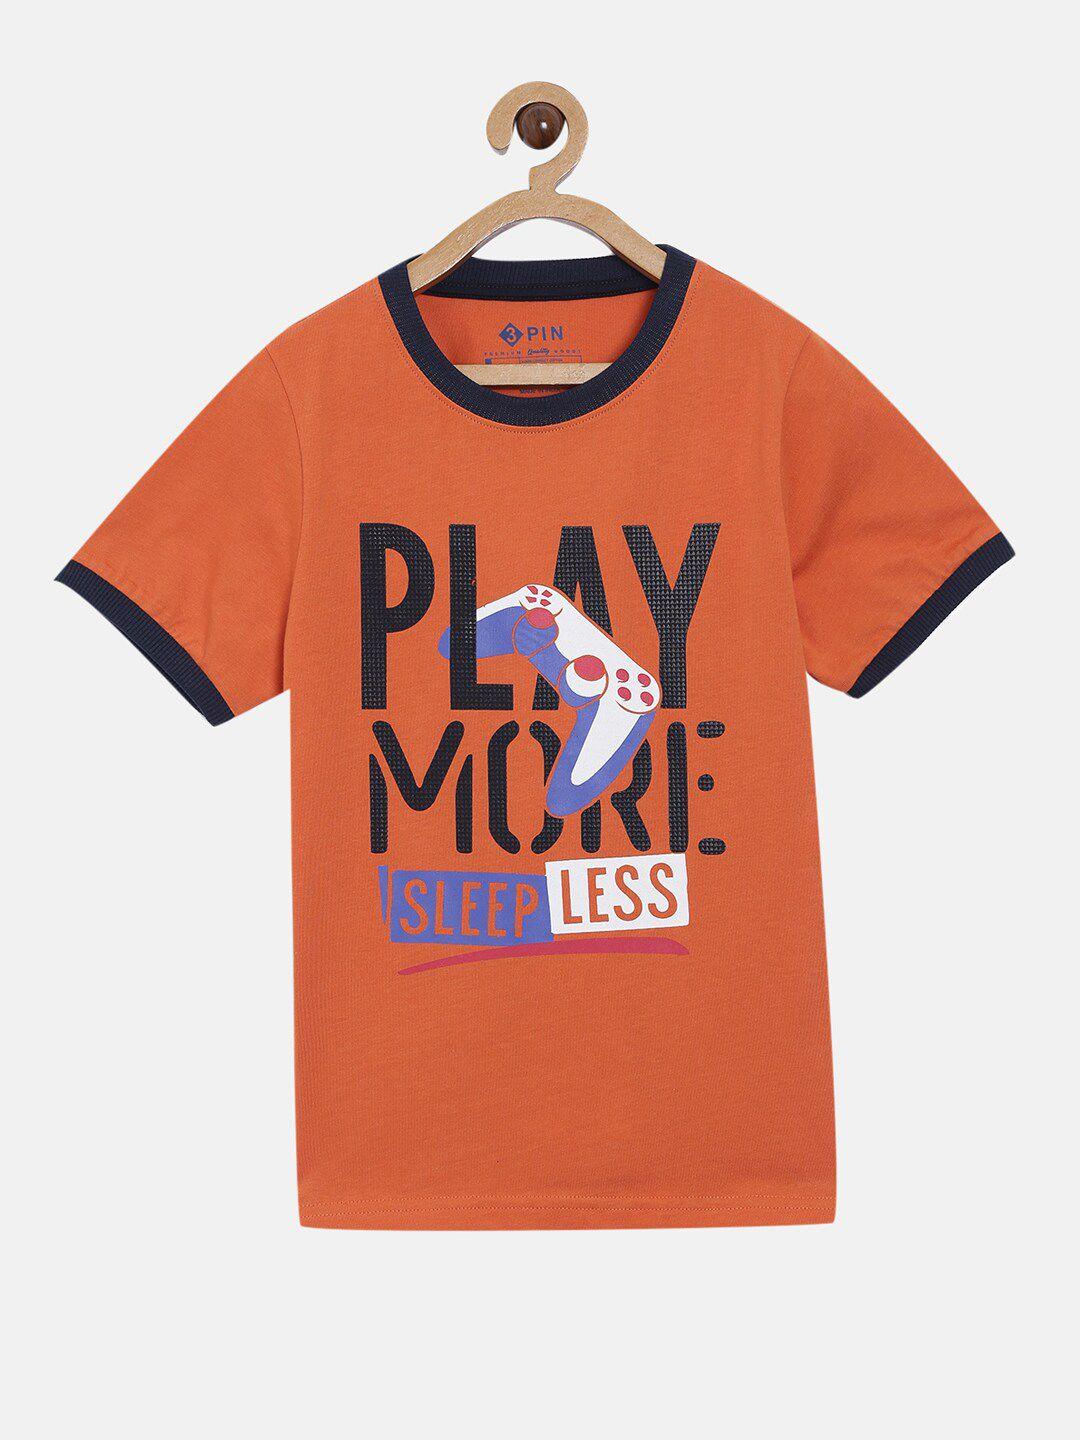 3pin boys orange typography printed t-shirt